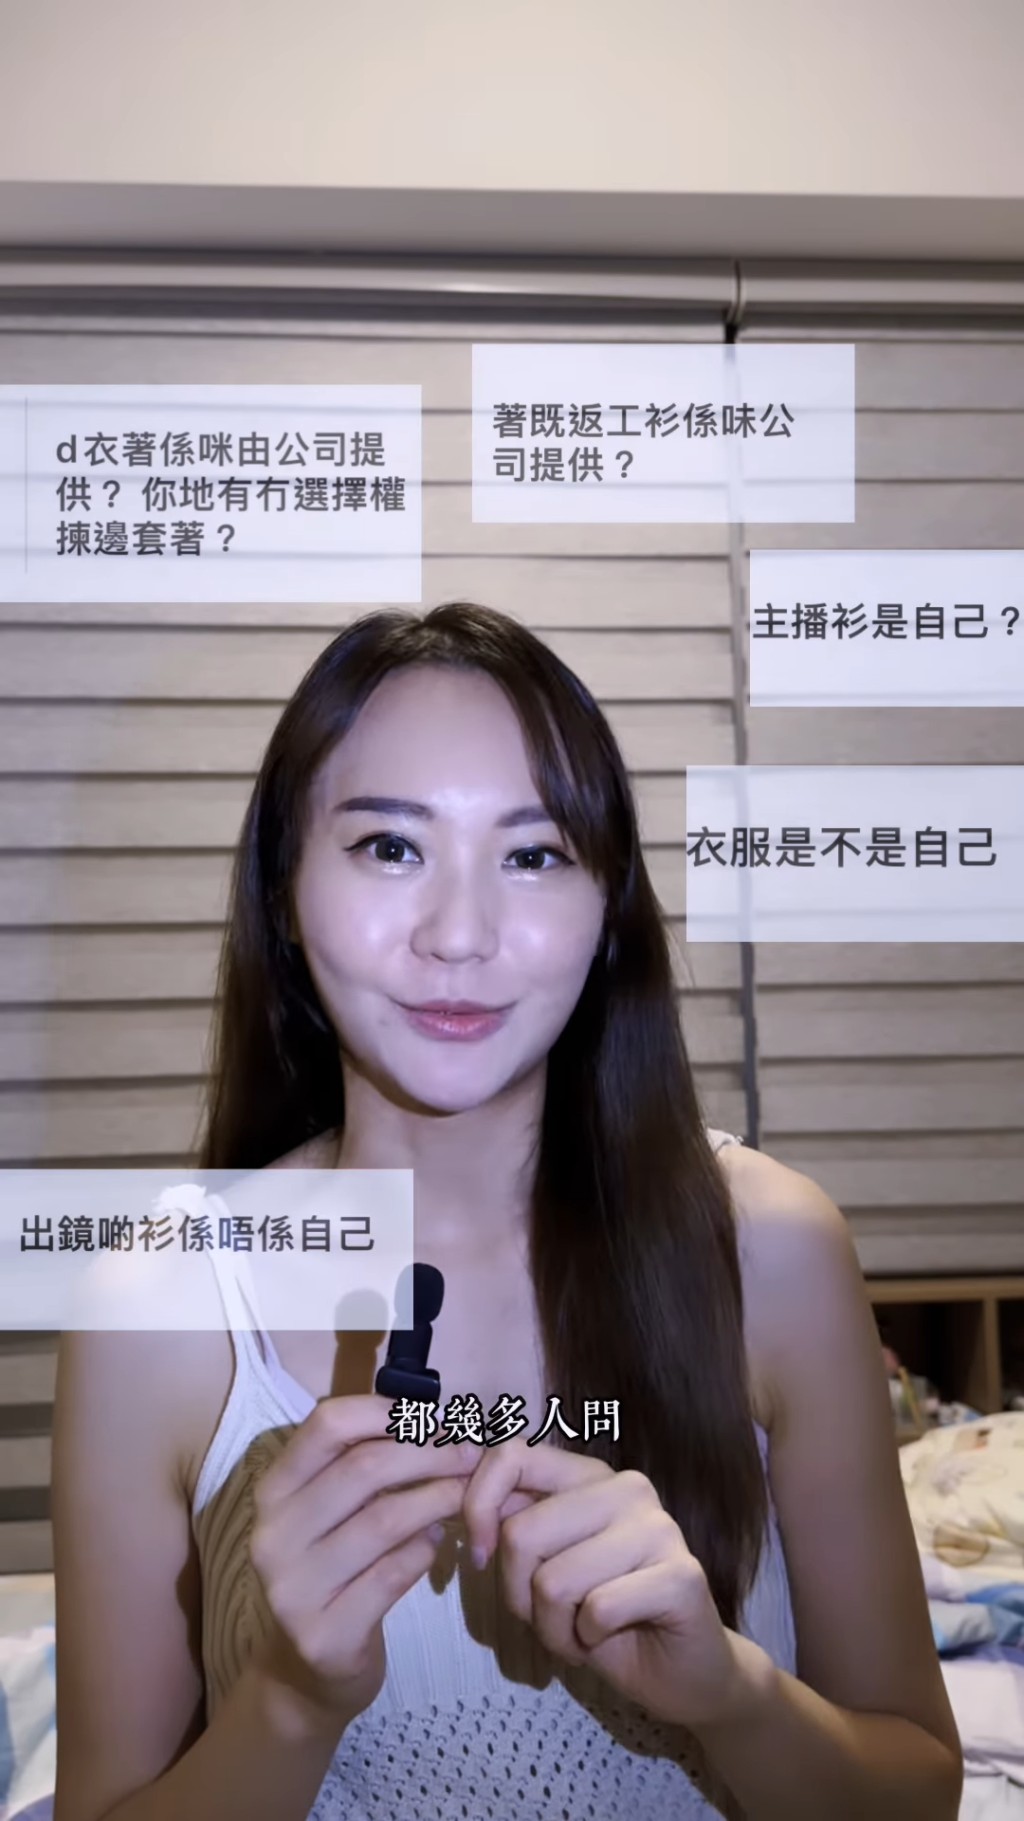 她又透露原来TVB有提供服饰。